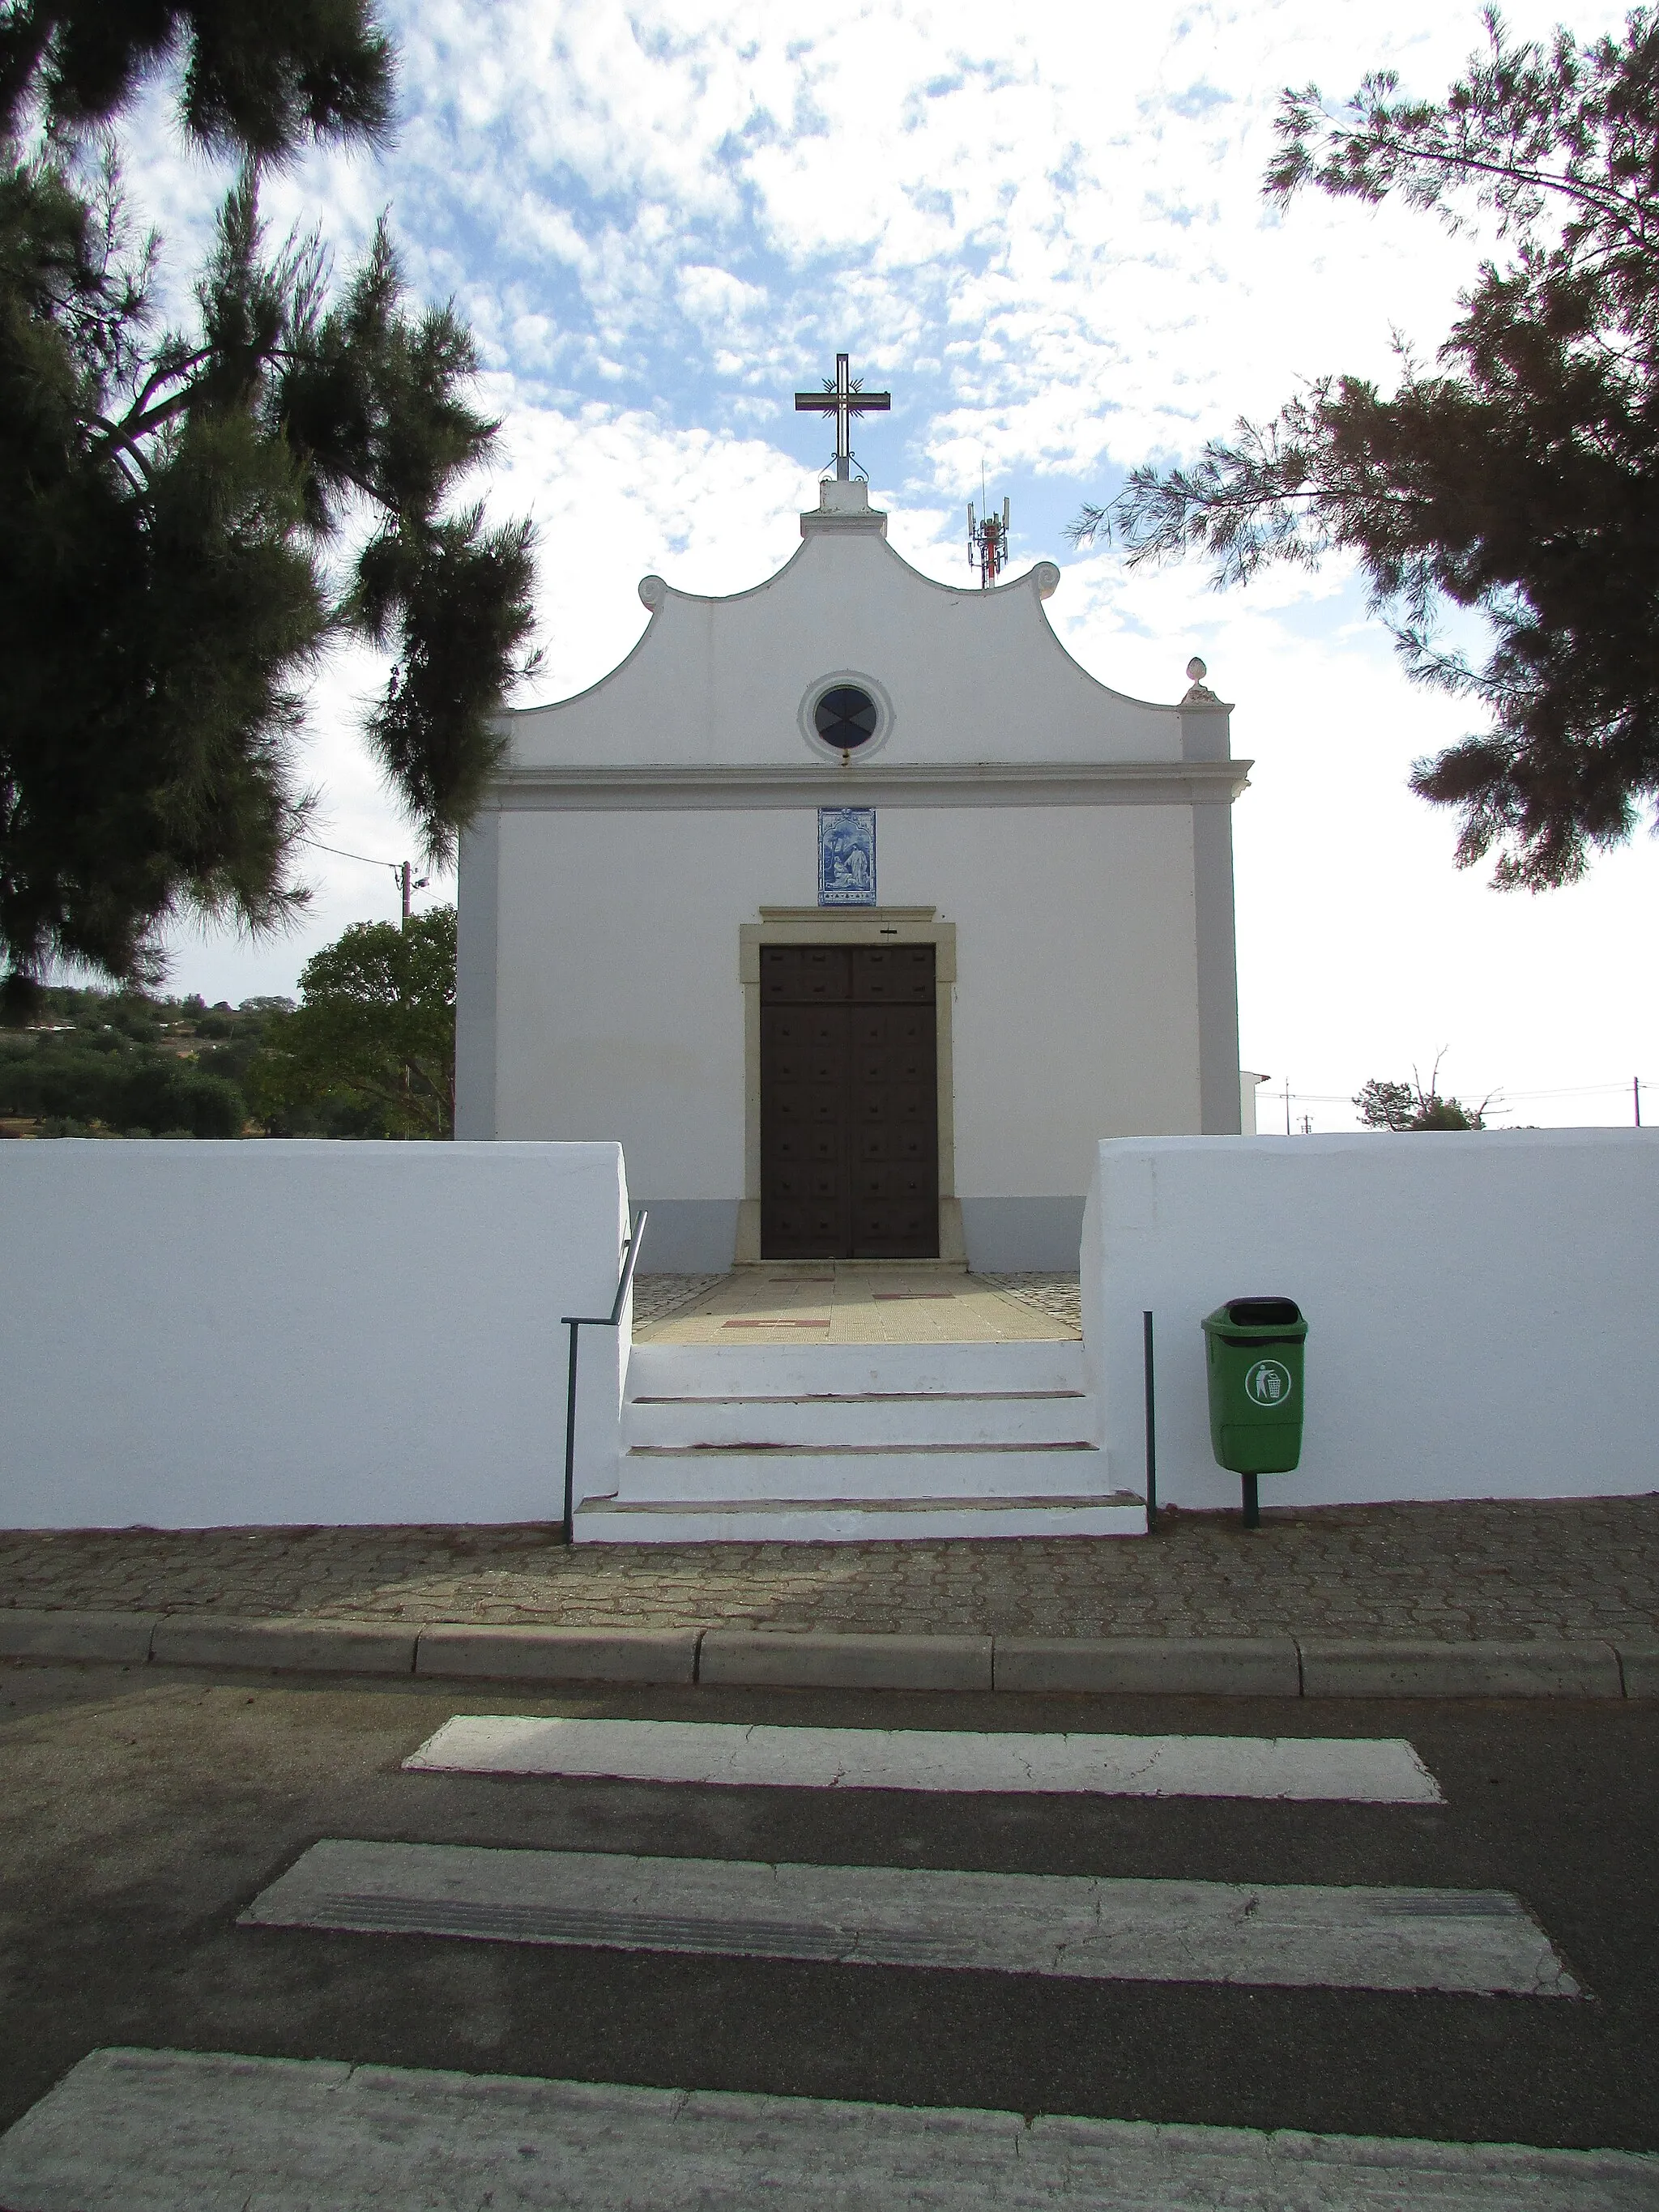 Zdjęcie: Algarve